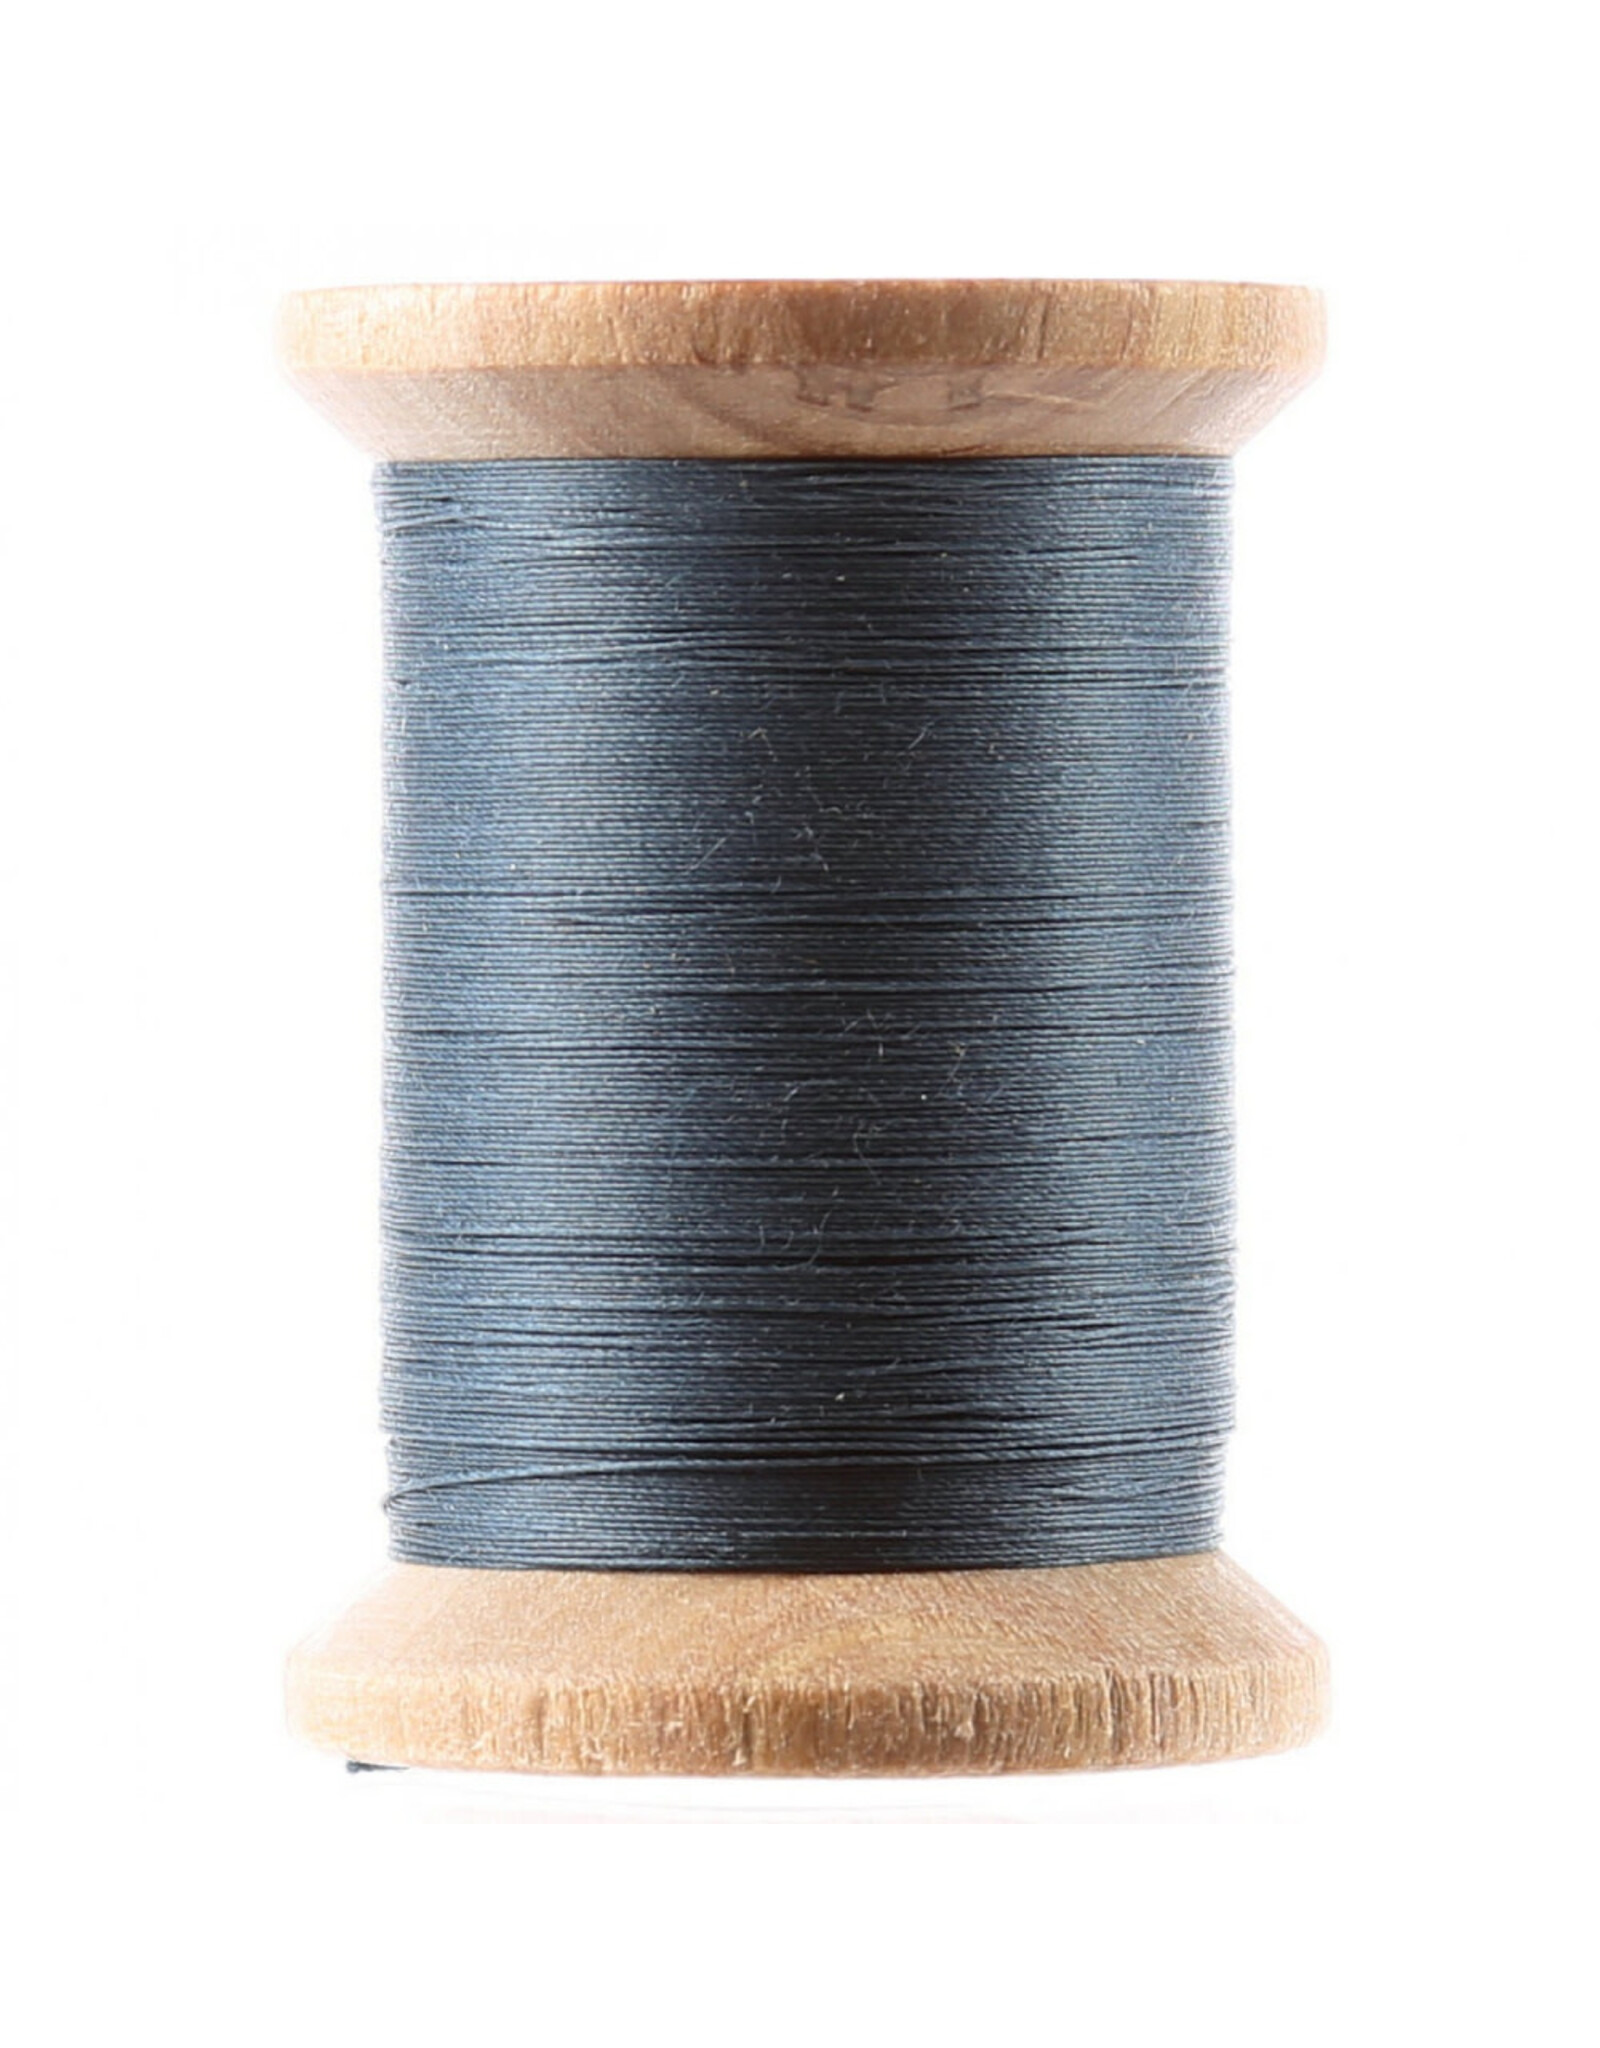 YLI ON ORDER-YLI Cotton Hand Quilting Thread, 014 Grey Blue, 40wt, 3 ply, 500 yd spool